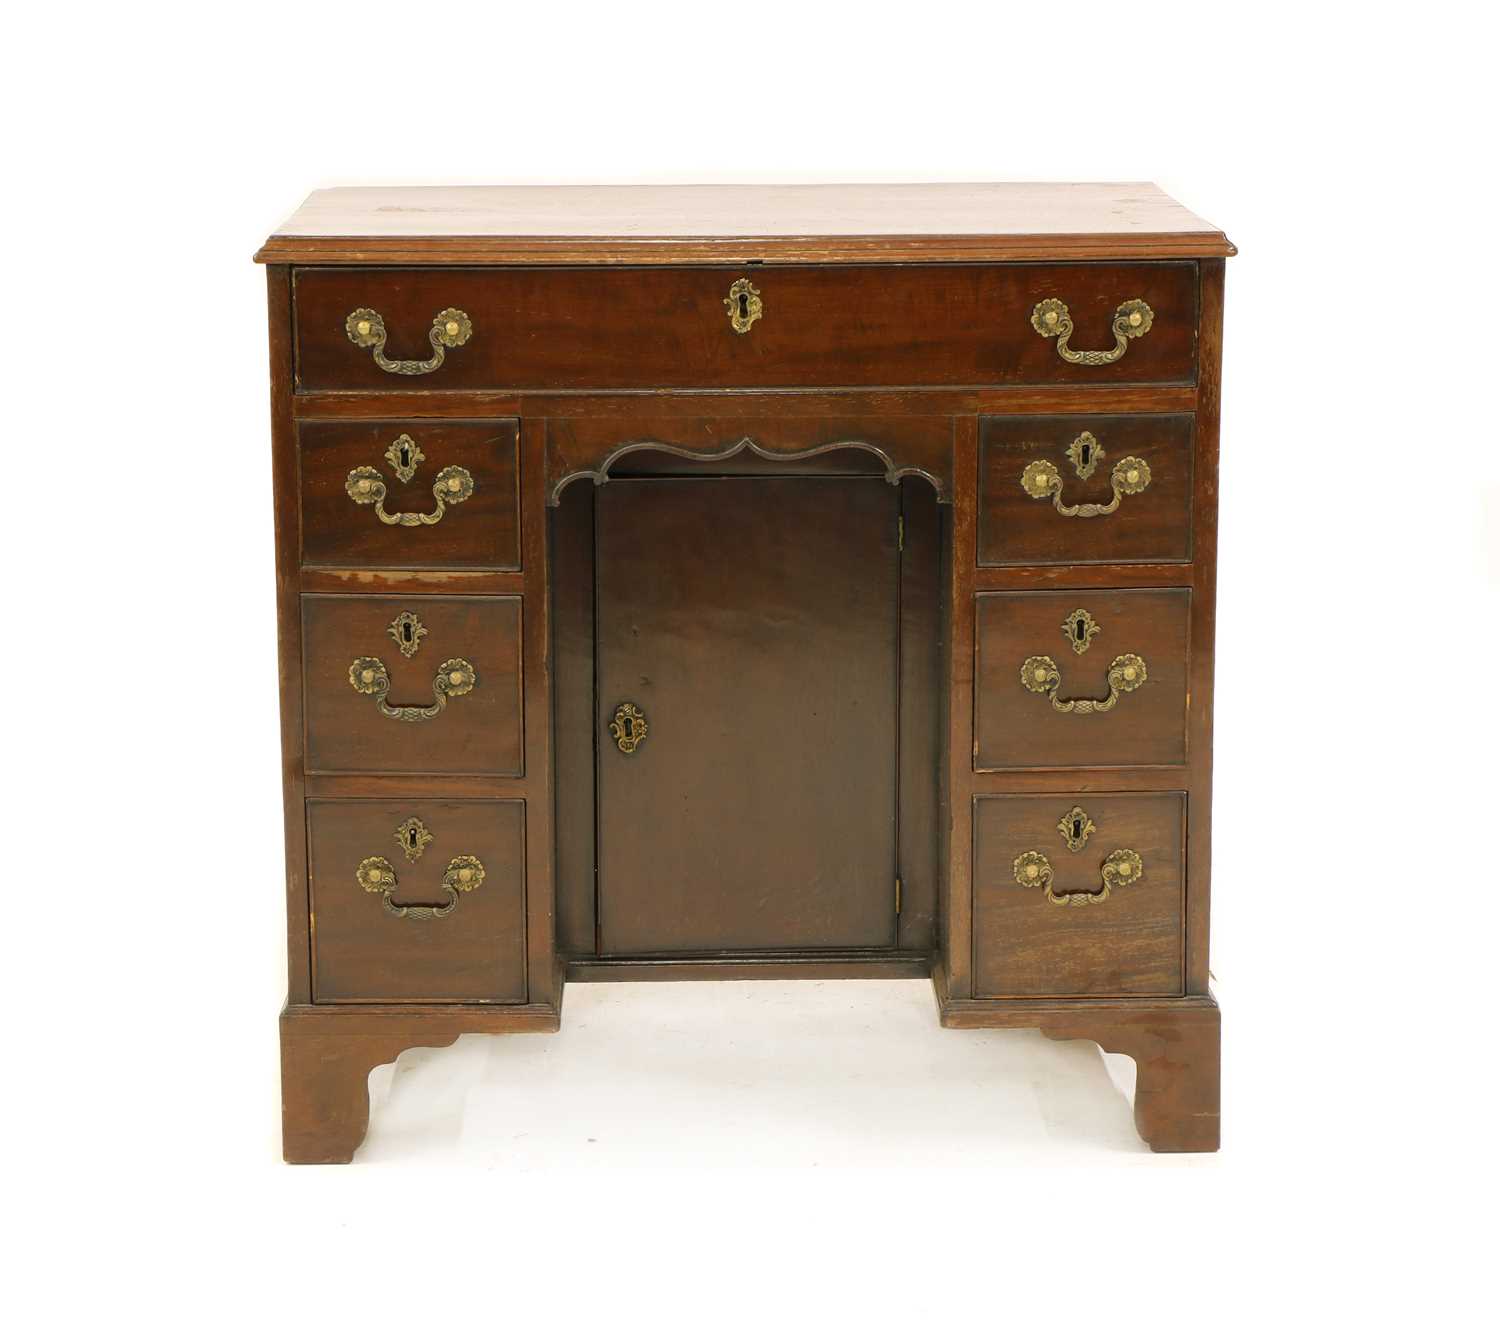 Lot 408 - A George III style mahogany kneehole desk